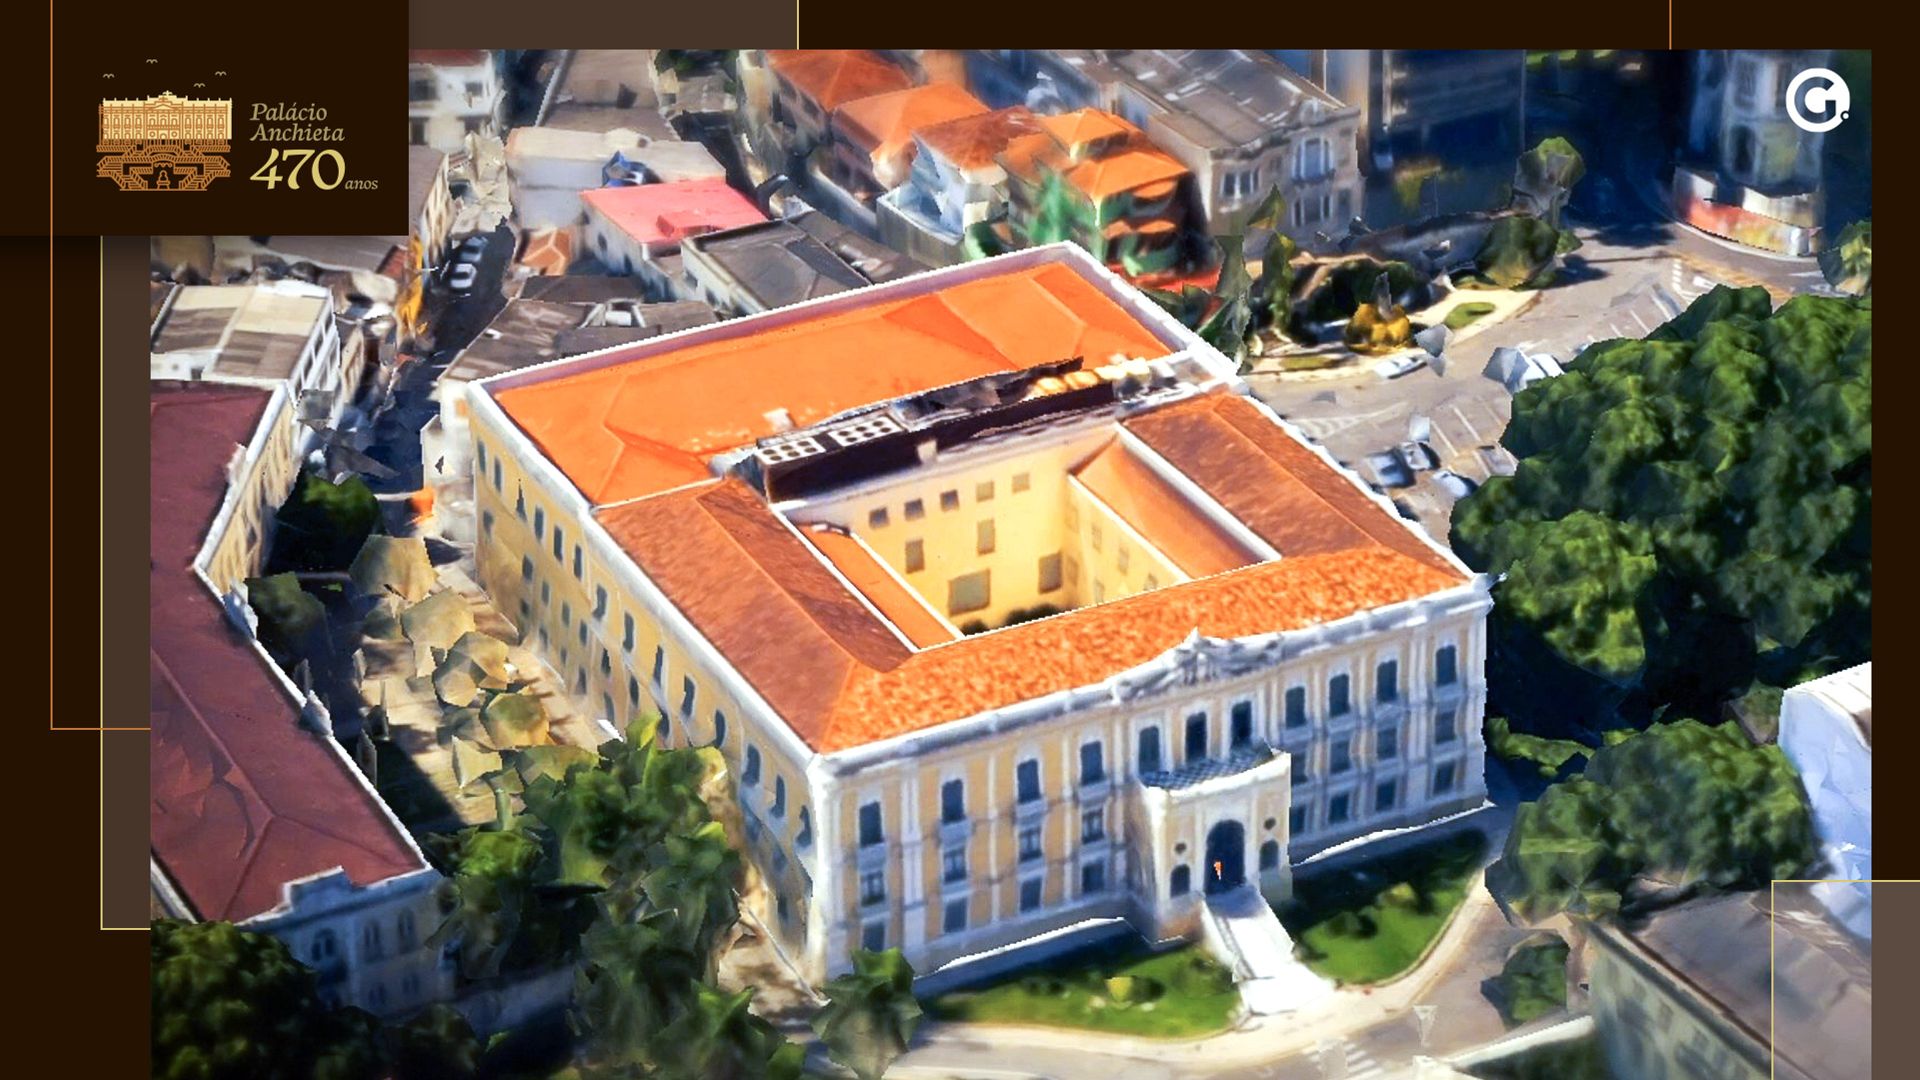 Palácio Anchieta ocupa uma área de 7 mil metros quadrados, que abriga uma estrutura com mais de 130 cômodos